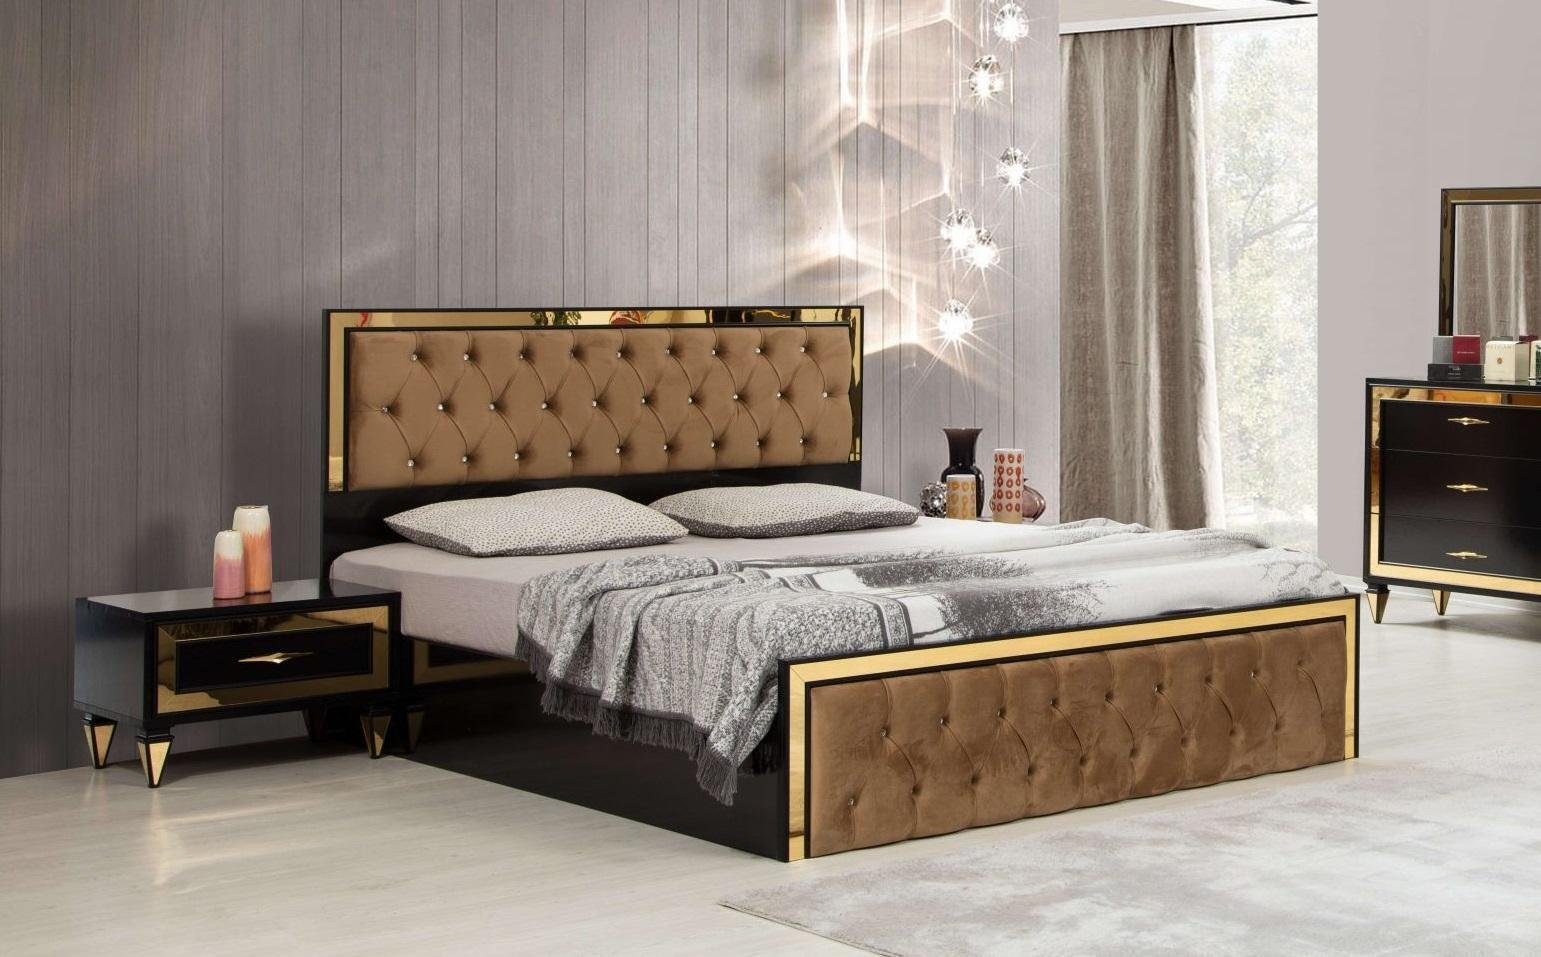 JVmoebel Schlafzimmer-Set Schlafzimmer Set Bett 2x Nachttische Designer Luxus Schwarz Modern Neu, Made In Europe